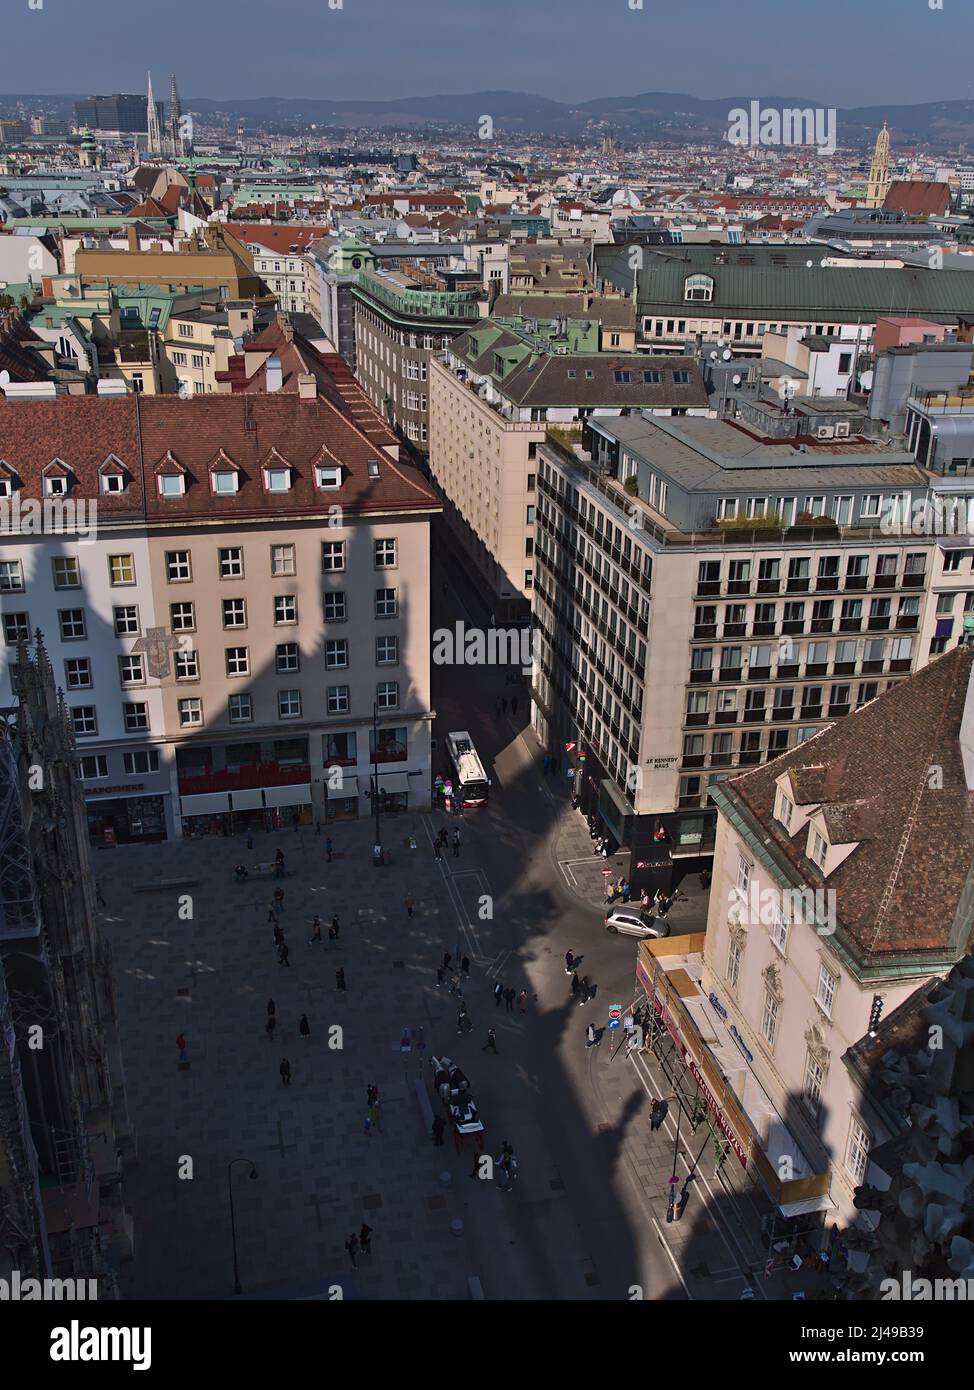 Vista ad alto angolo del centro storico di Vienna, Austria, con la famosa piazza Stephansplatz circondata da un denso sviluppo vista da Stephansdom. Foto Stock